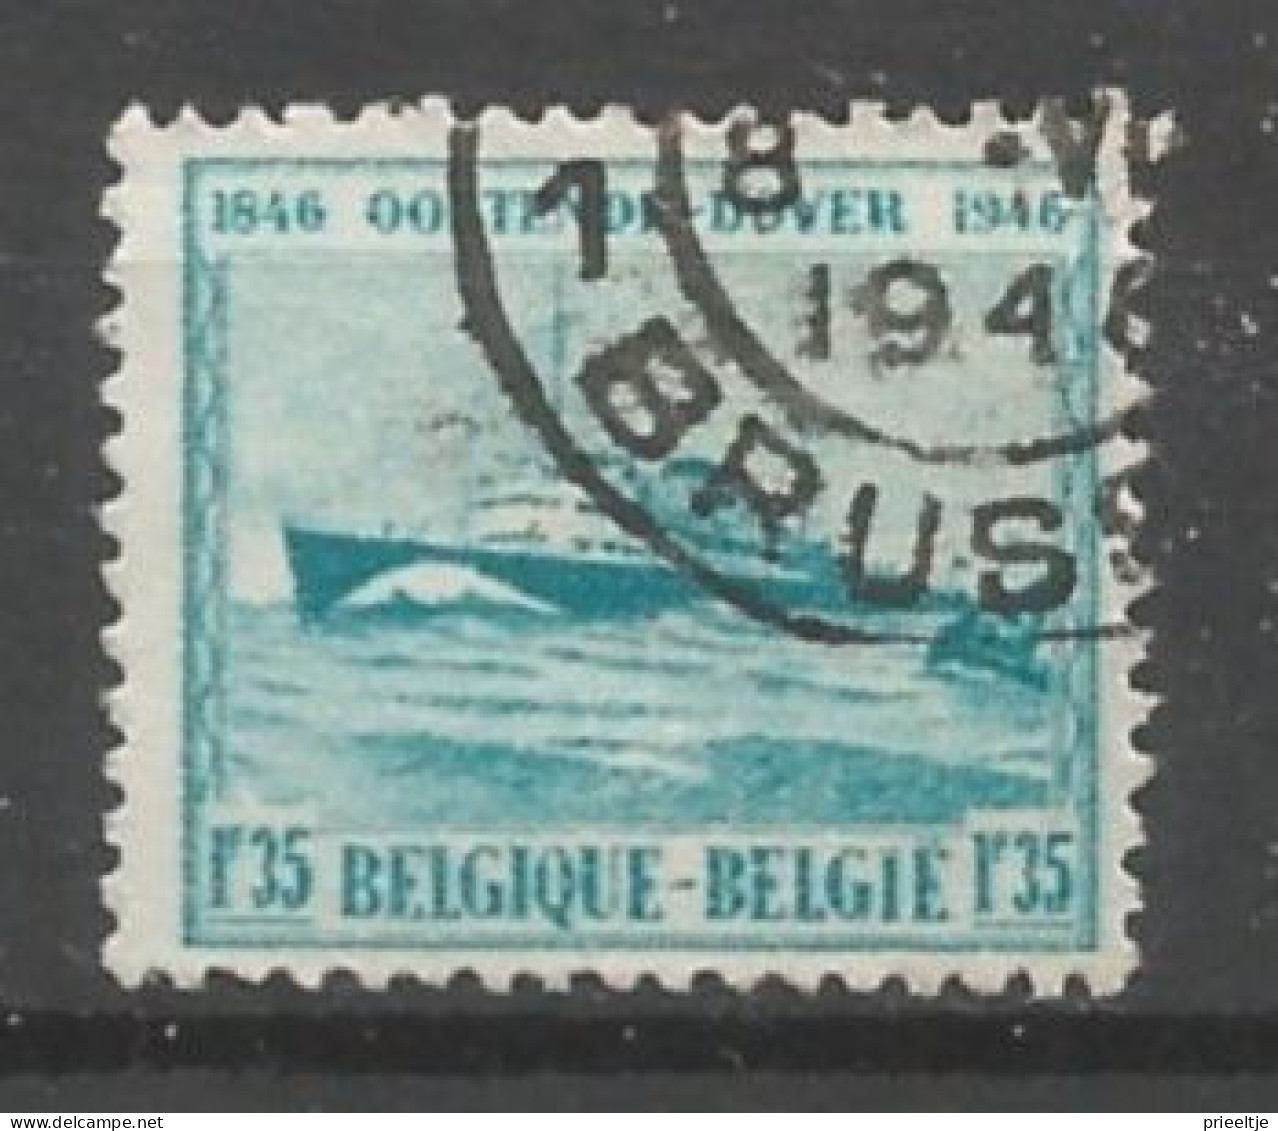 Belgie 1946 Mailboot Pr.Boudewijn OCB 725a (0) - Used Stamps